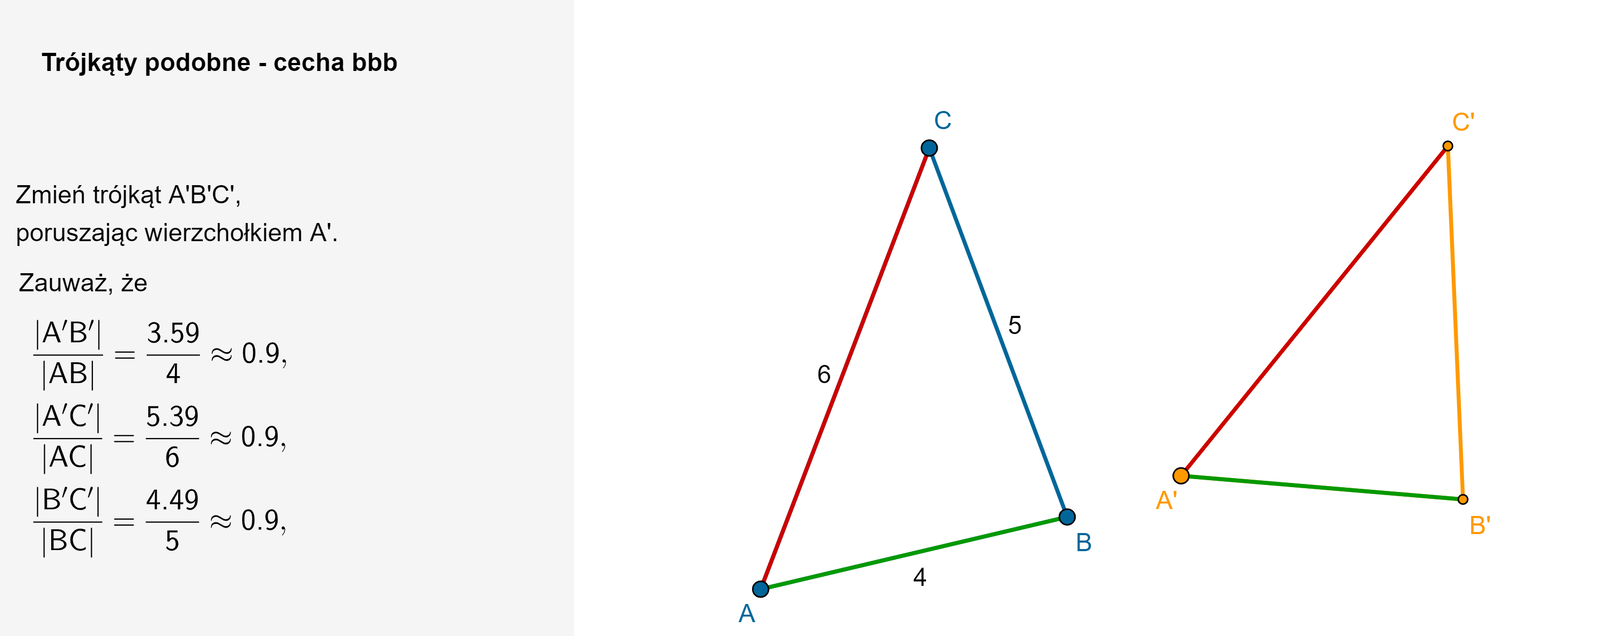 Po lewej stronie apletu znajduje się miejsce na komentarz. Tytuł apletu: Trójkąty podobne - cecha b b b. Treść poniżej: Zmień położenie trójkąta A prim B prim C prim, poruszając wierzchołkiem A prim. Zauważ, że A'B'AB  =44=1, A'C'CC  =66=1 oraz B'C'AC  =55=1. Po prawej stronie znajdują się trójkąty A B C oraz A prim B prim oraz C prim .  Podczas zmiany wierzchołków trójkąta A prim B prim C prim możemy stworzyć większy lub mniejszy trójkąt niż   A B C. Przykładowo po zwiększeniu trójkąta A prim B prim C prim dostajemy A'B'AB  =84=2, A'C'CC  =126=2 oraz B'C'AC  =105=2.